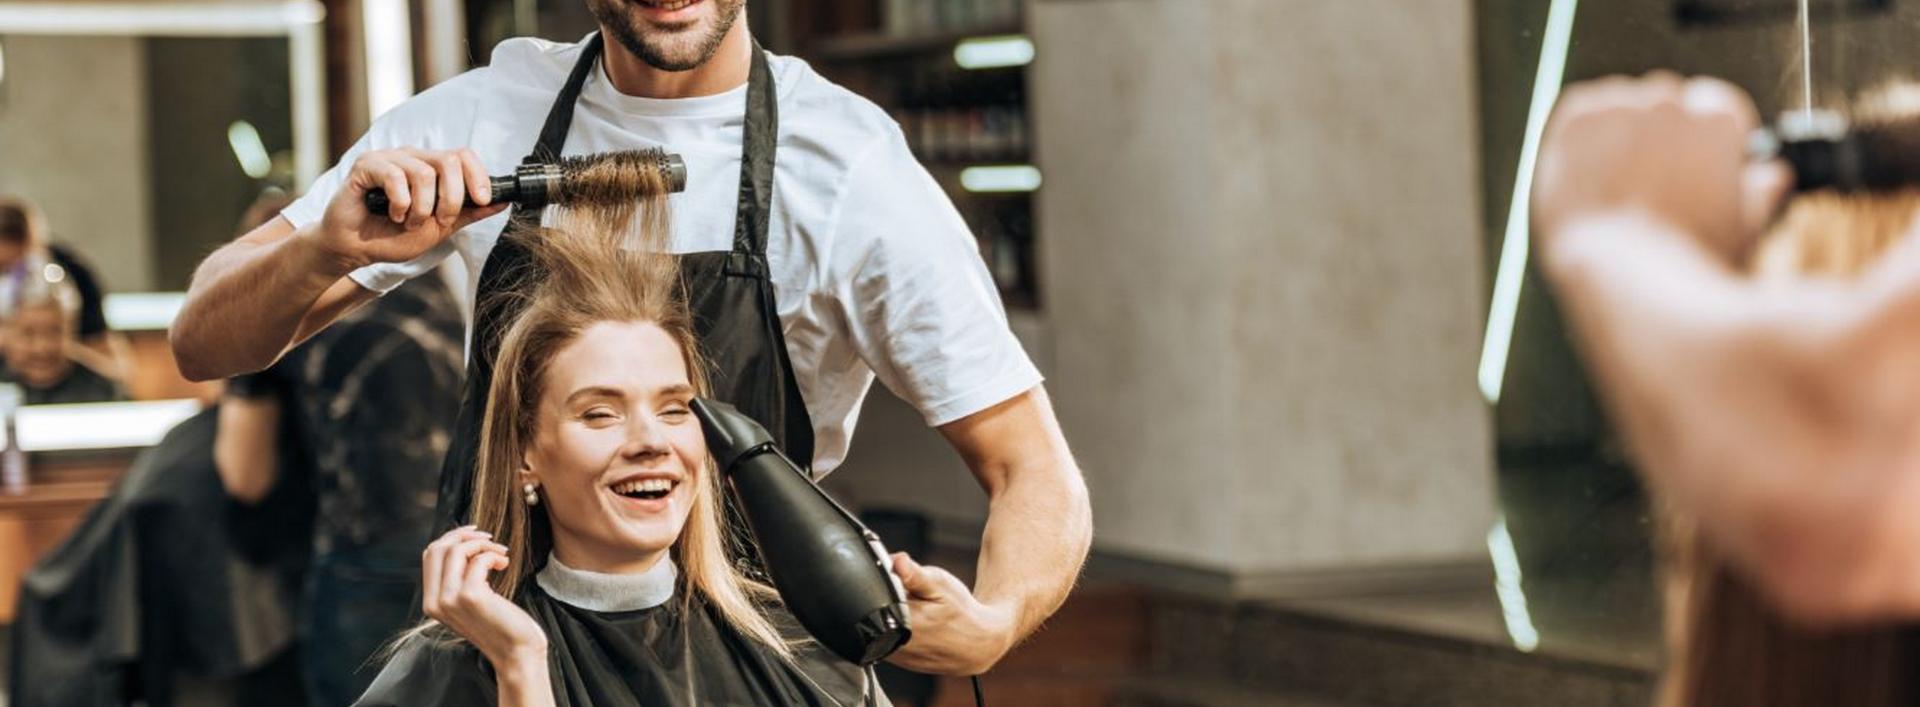 Polka u fryzjera - ile wydajemy na włosy i z jakich usług korzystamy najczęściej?